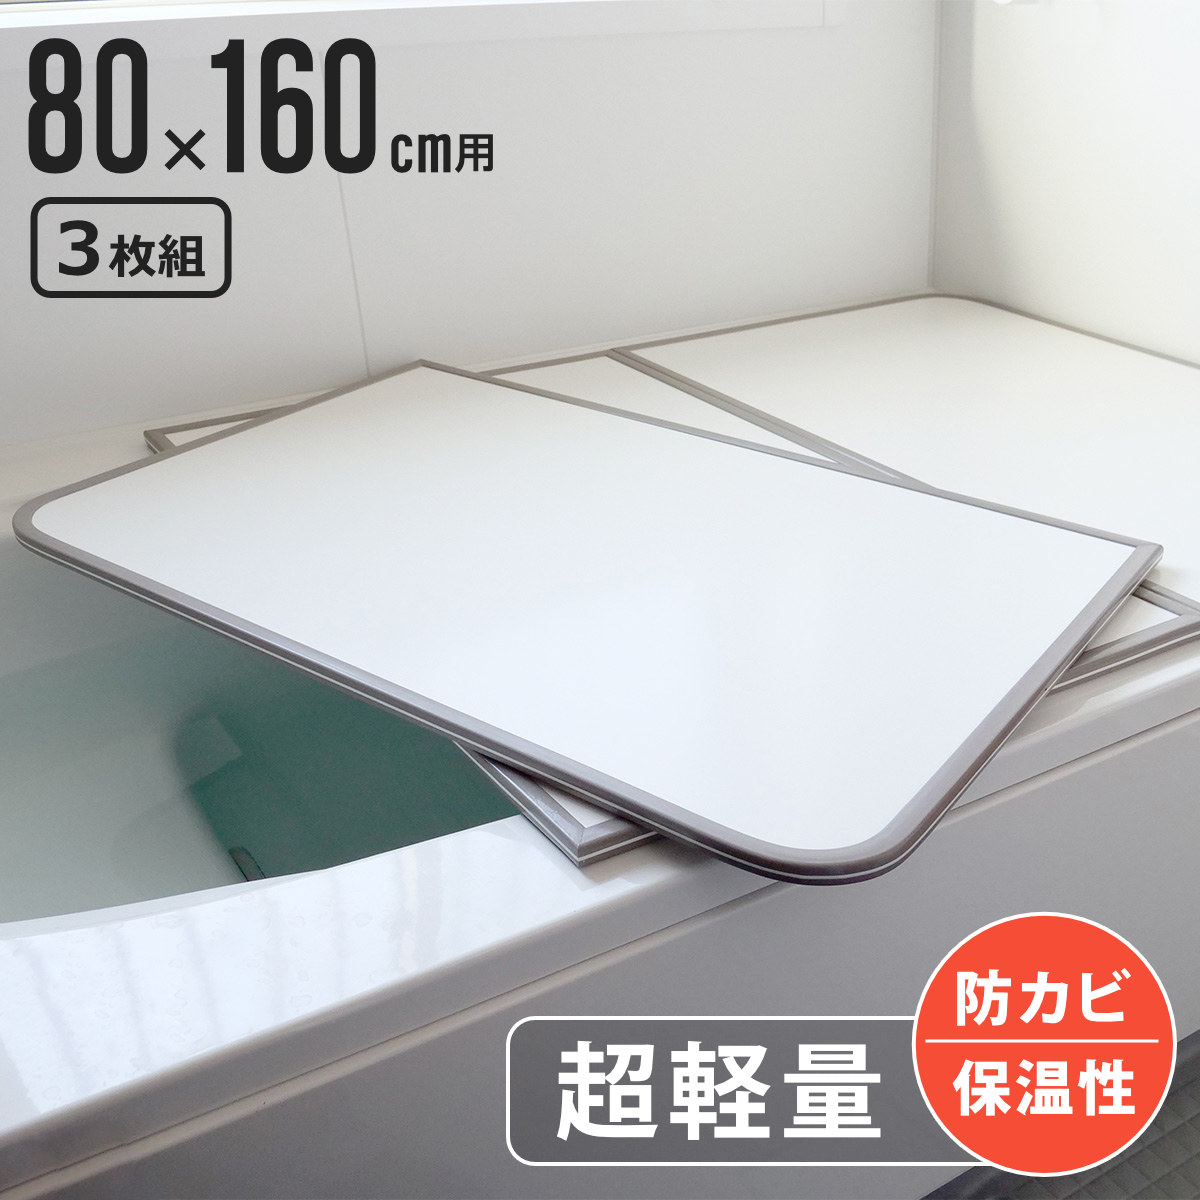 風呂ふた 組み合わせ 軽量 カビの生えにくい風呂ふた W-16 80×160cm 実寸78×158cm 3枚組 （ 風呂蓋 風呂フタ 風呂 ふた 保温 かびにく